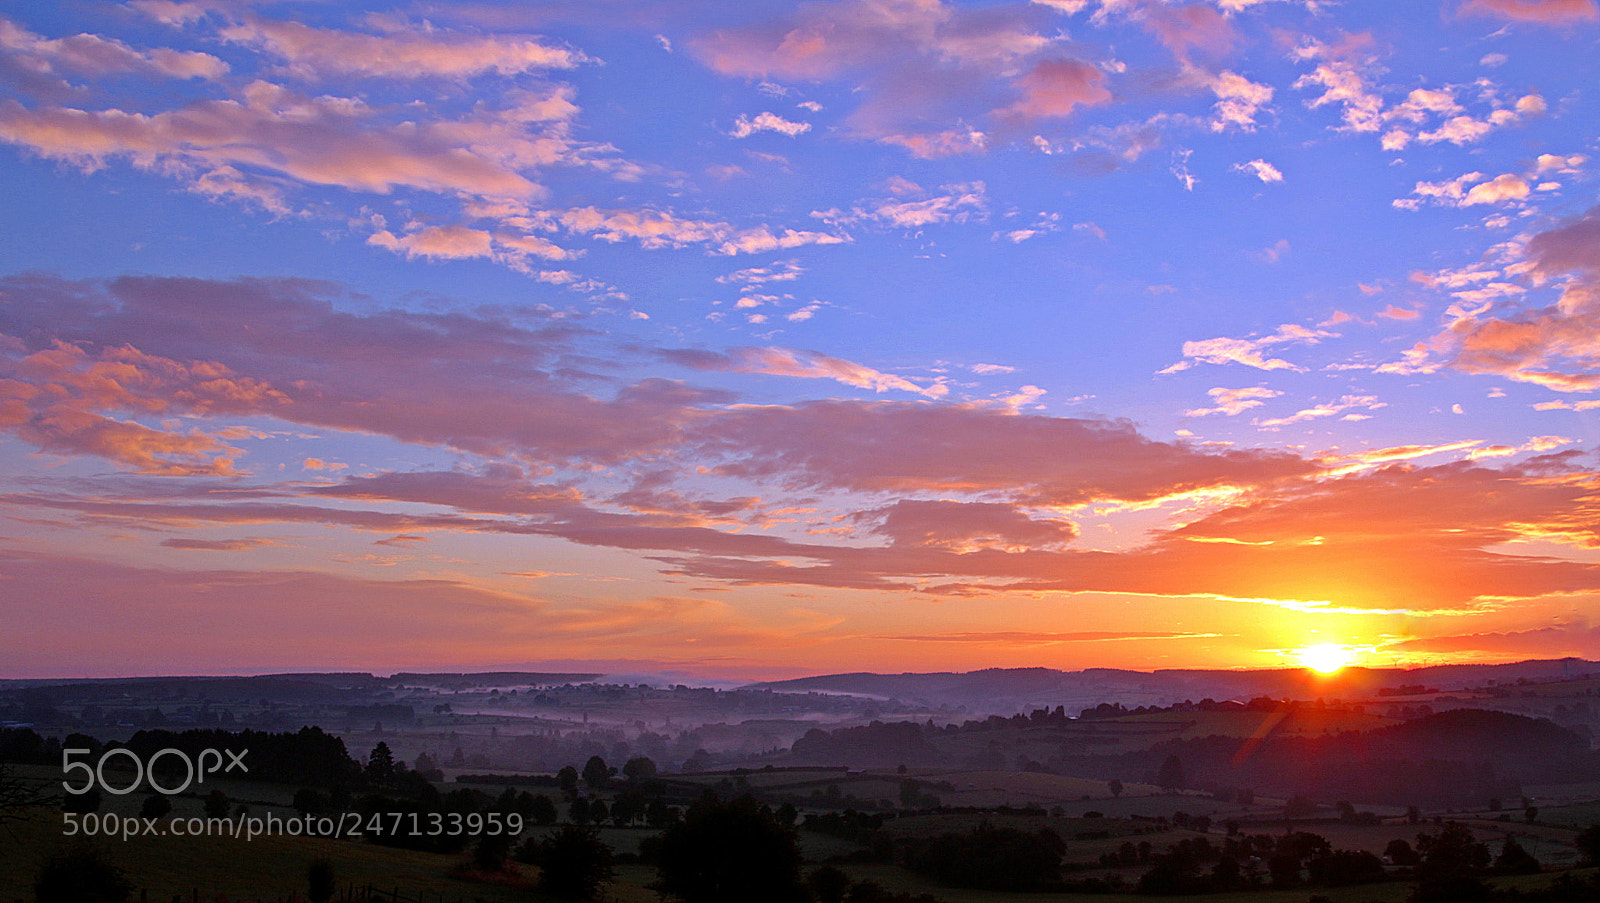 Canon EOS 650D (EOS Rebel T4i / EOS Kiss X6i) sample photo. Beautiful sunrise photography